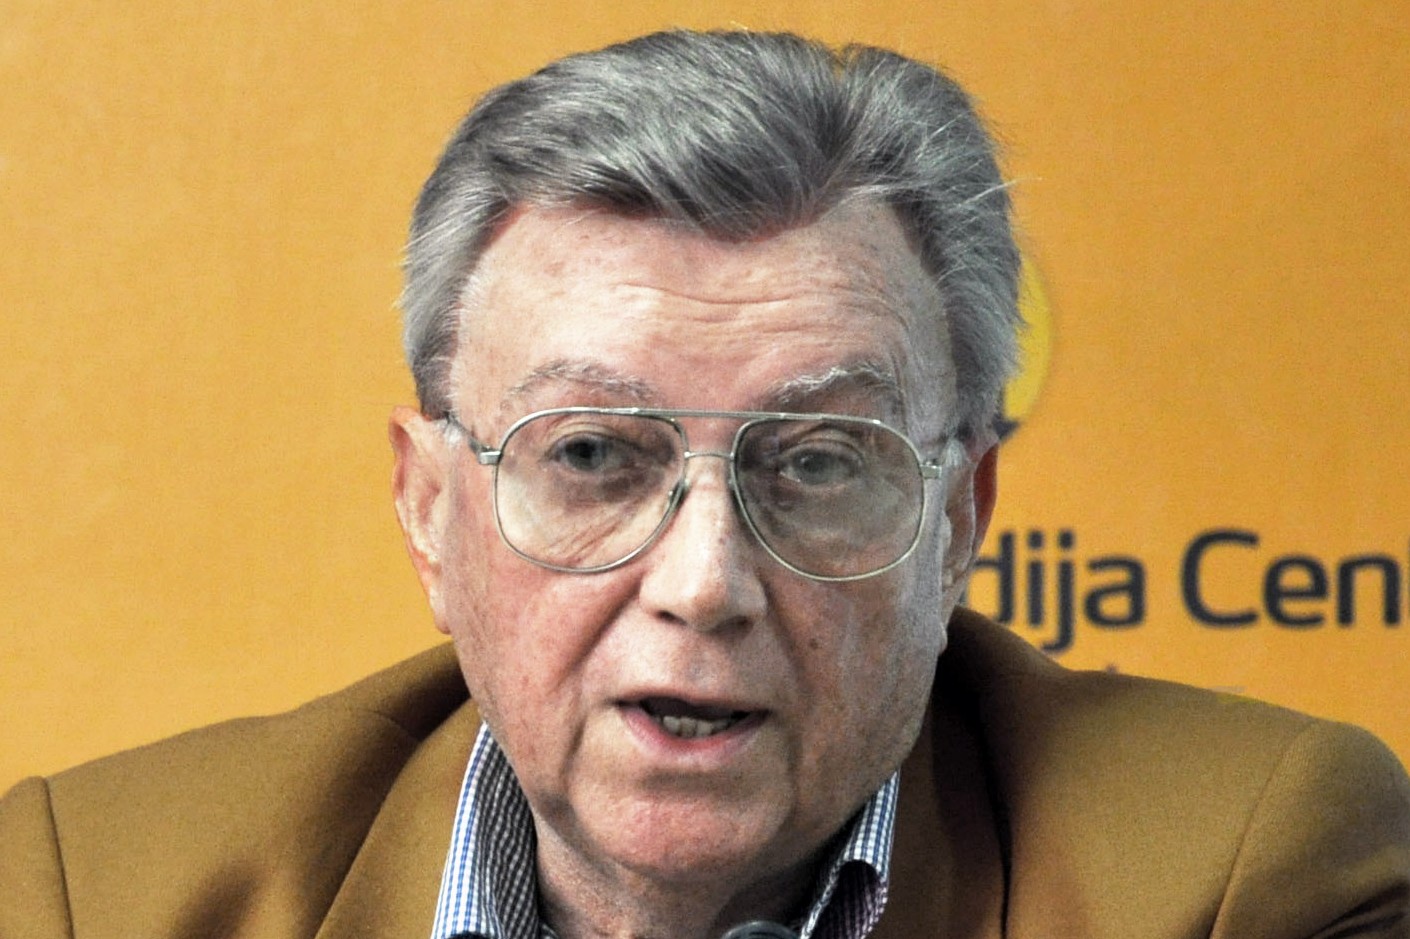 Борисав Јовић, бивши председник Председништва СФРЈ (Фото: Wikimedia/Медија центар Београд, CC BY-SA 3.0)